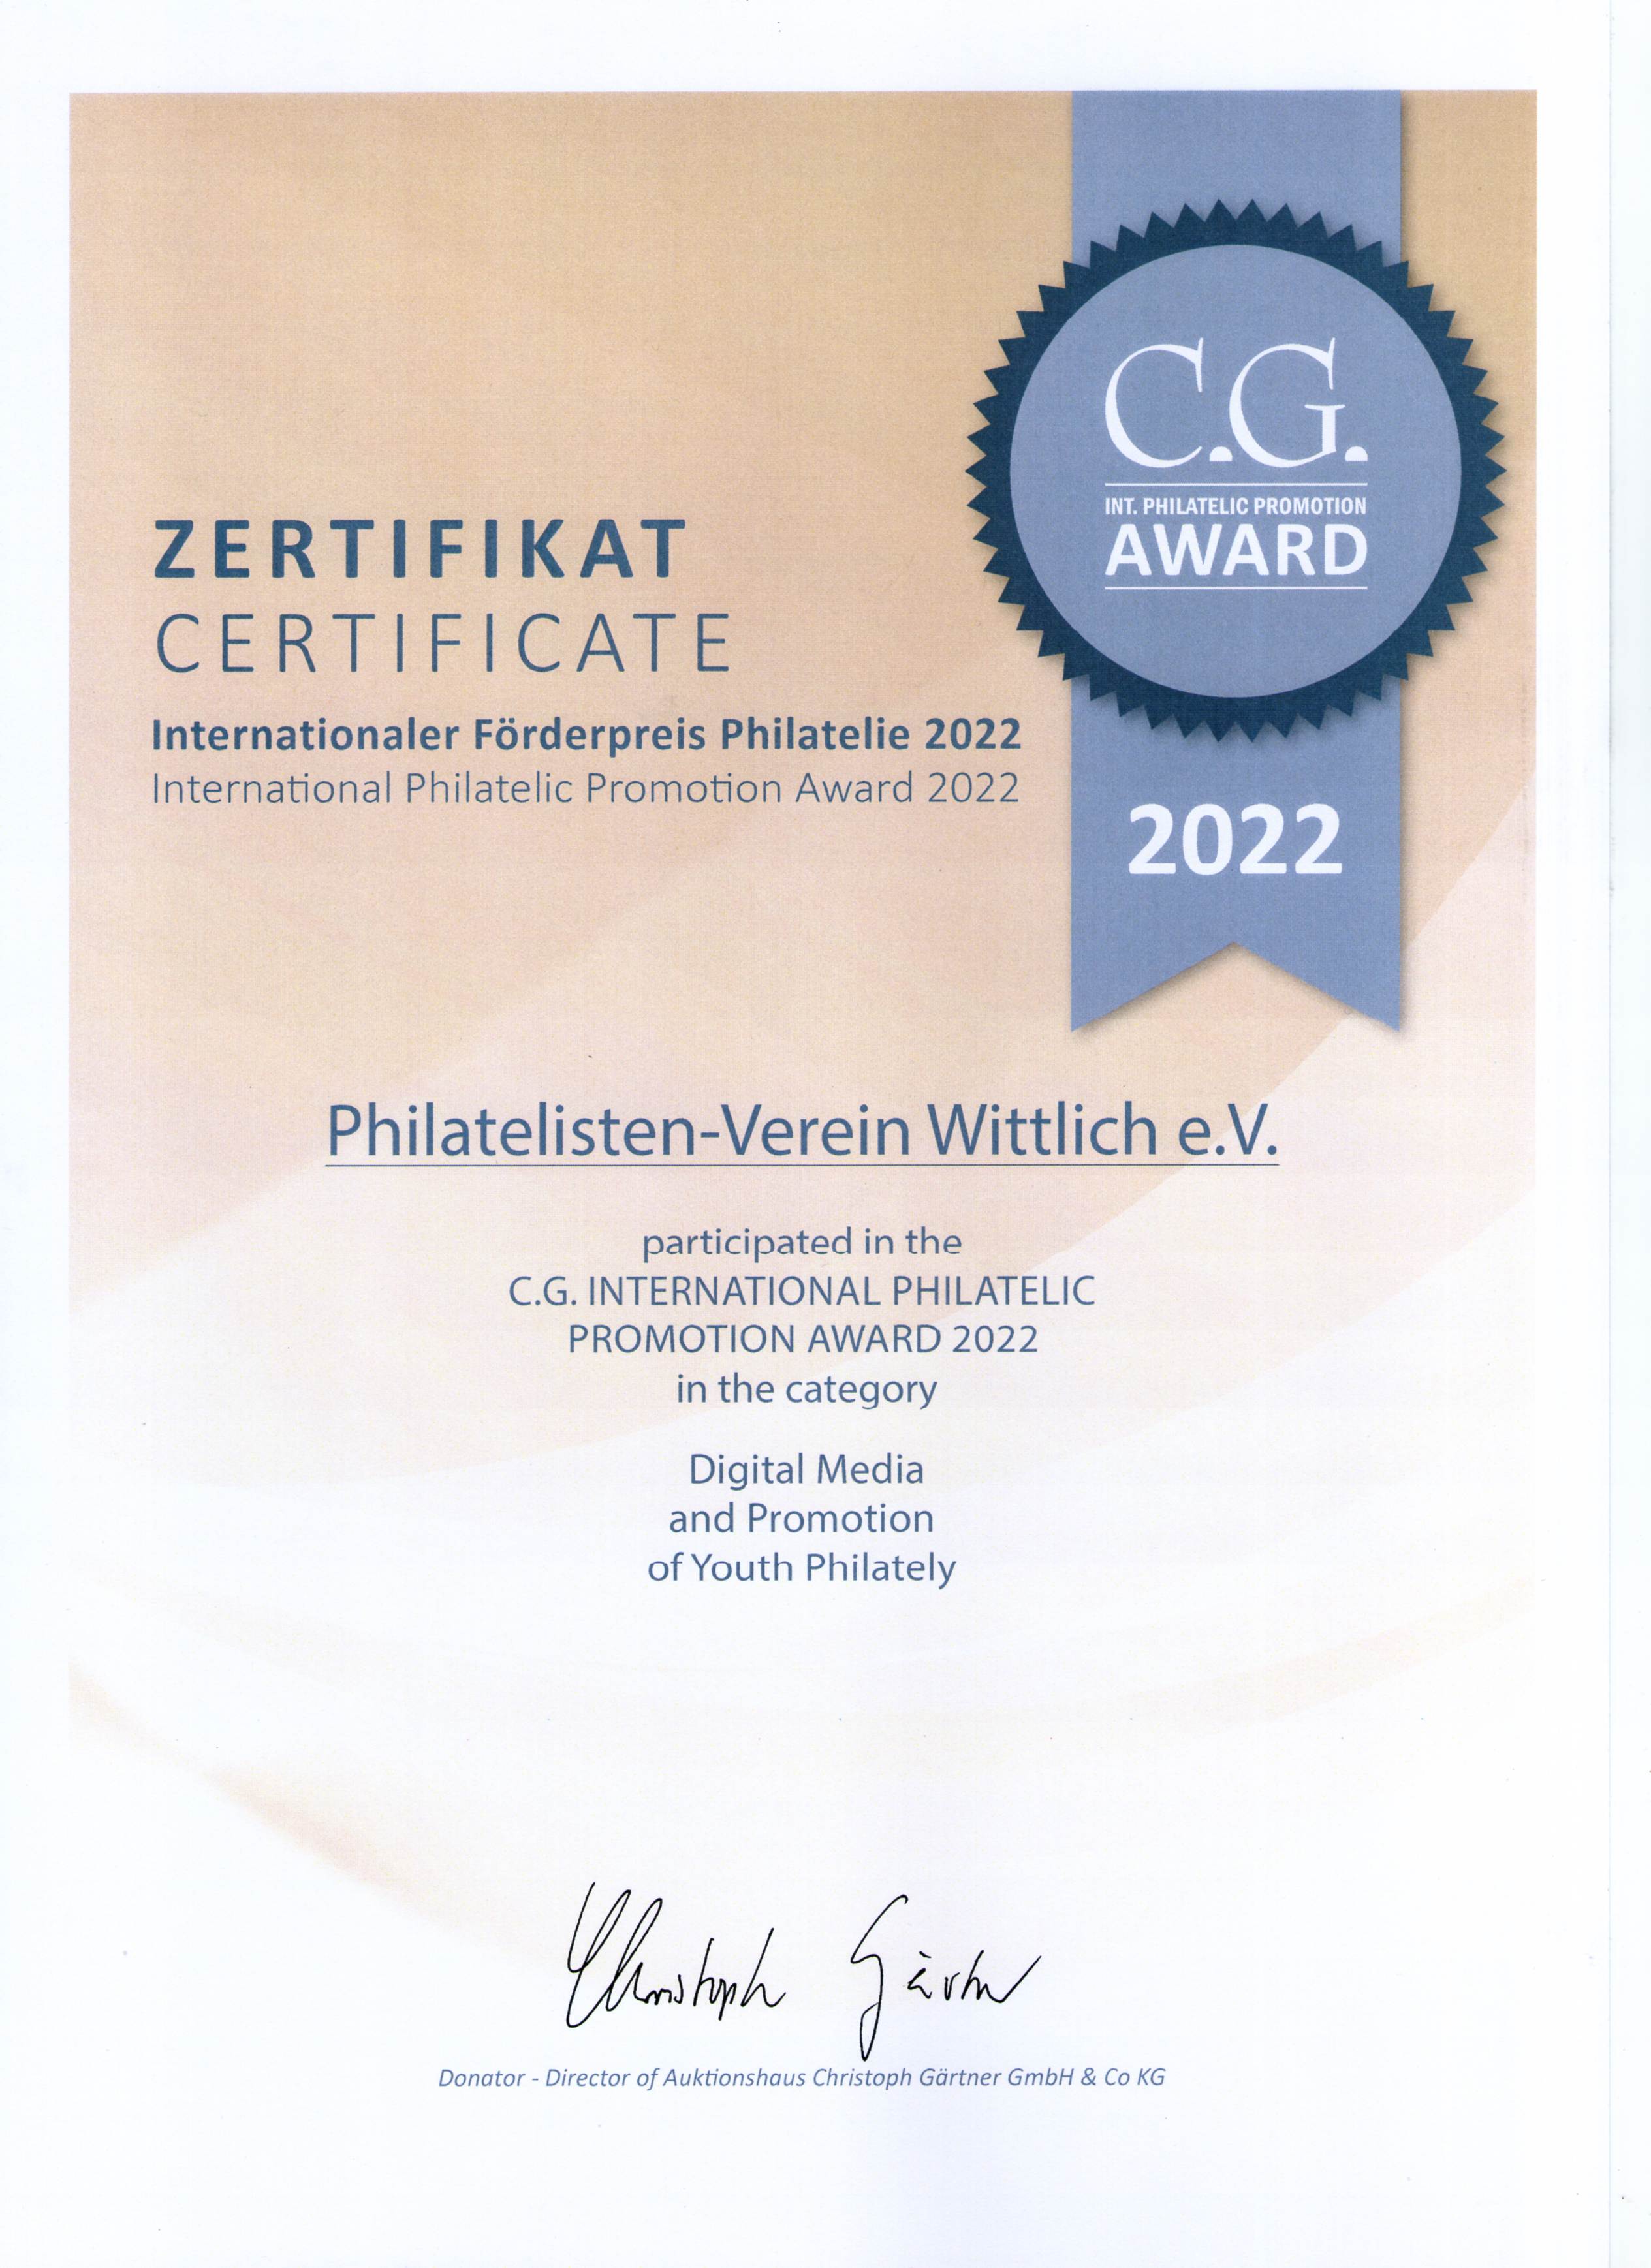 CG Award 2022 Zertifikat1